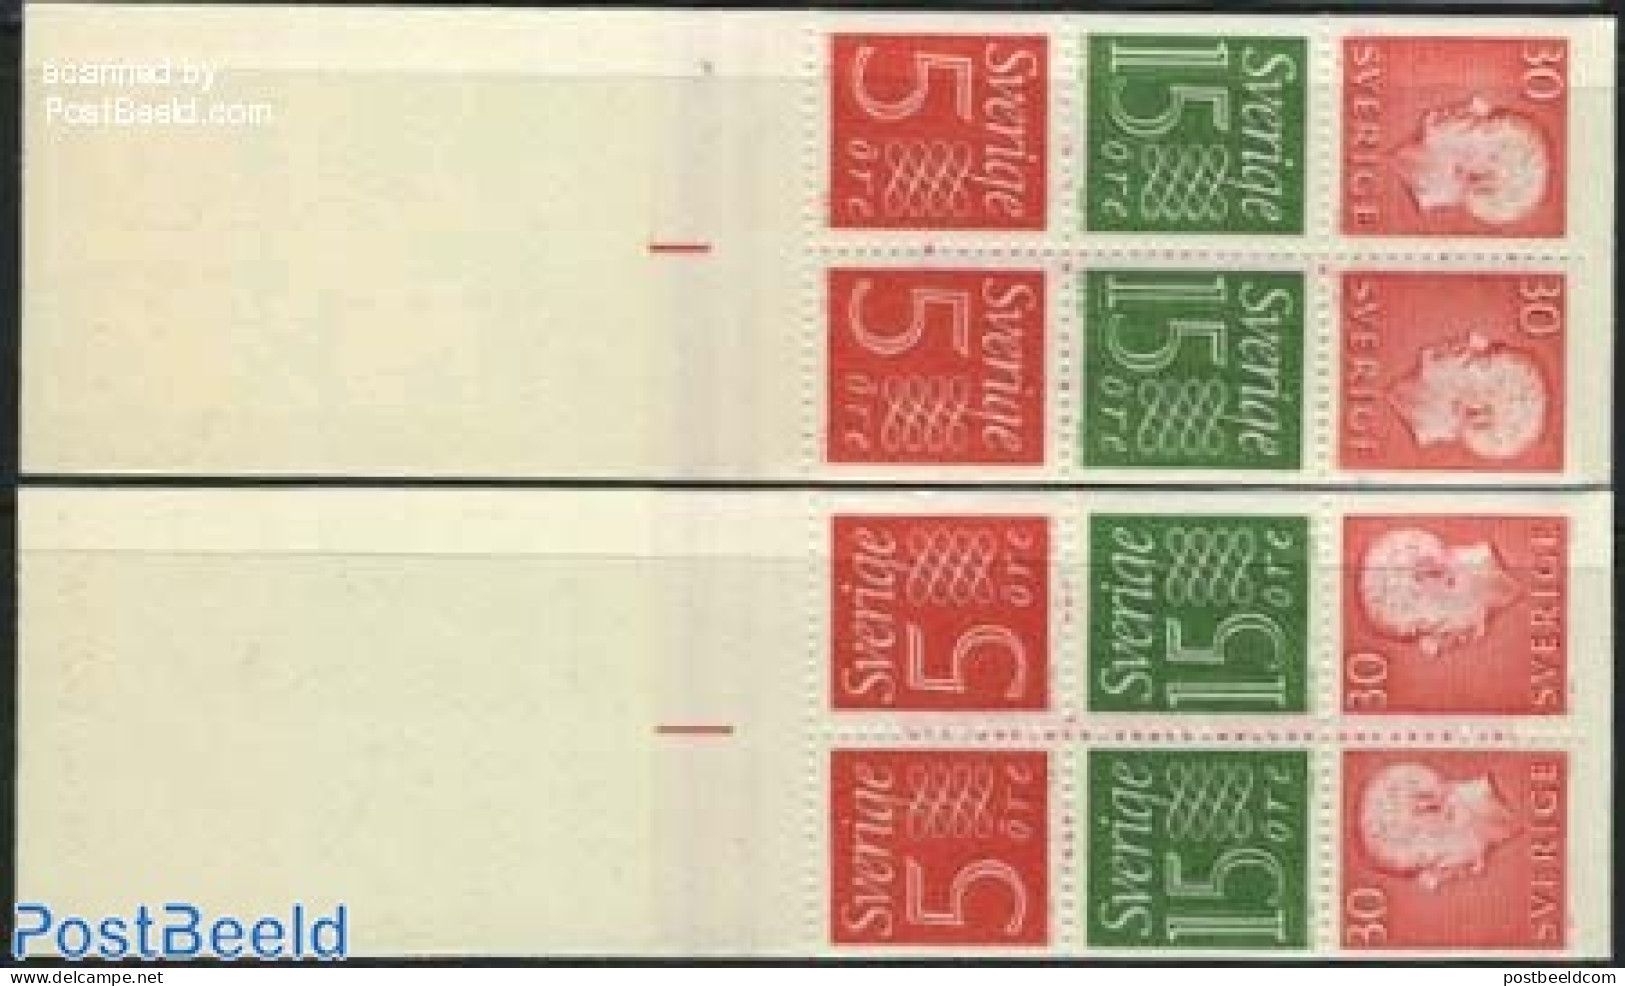 Sweden 1966 Definitives 2 Booklets, Mint NH, Stamp Booklets - Ongebruikt